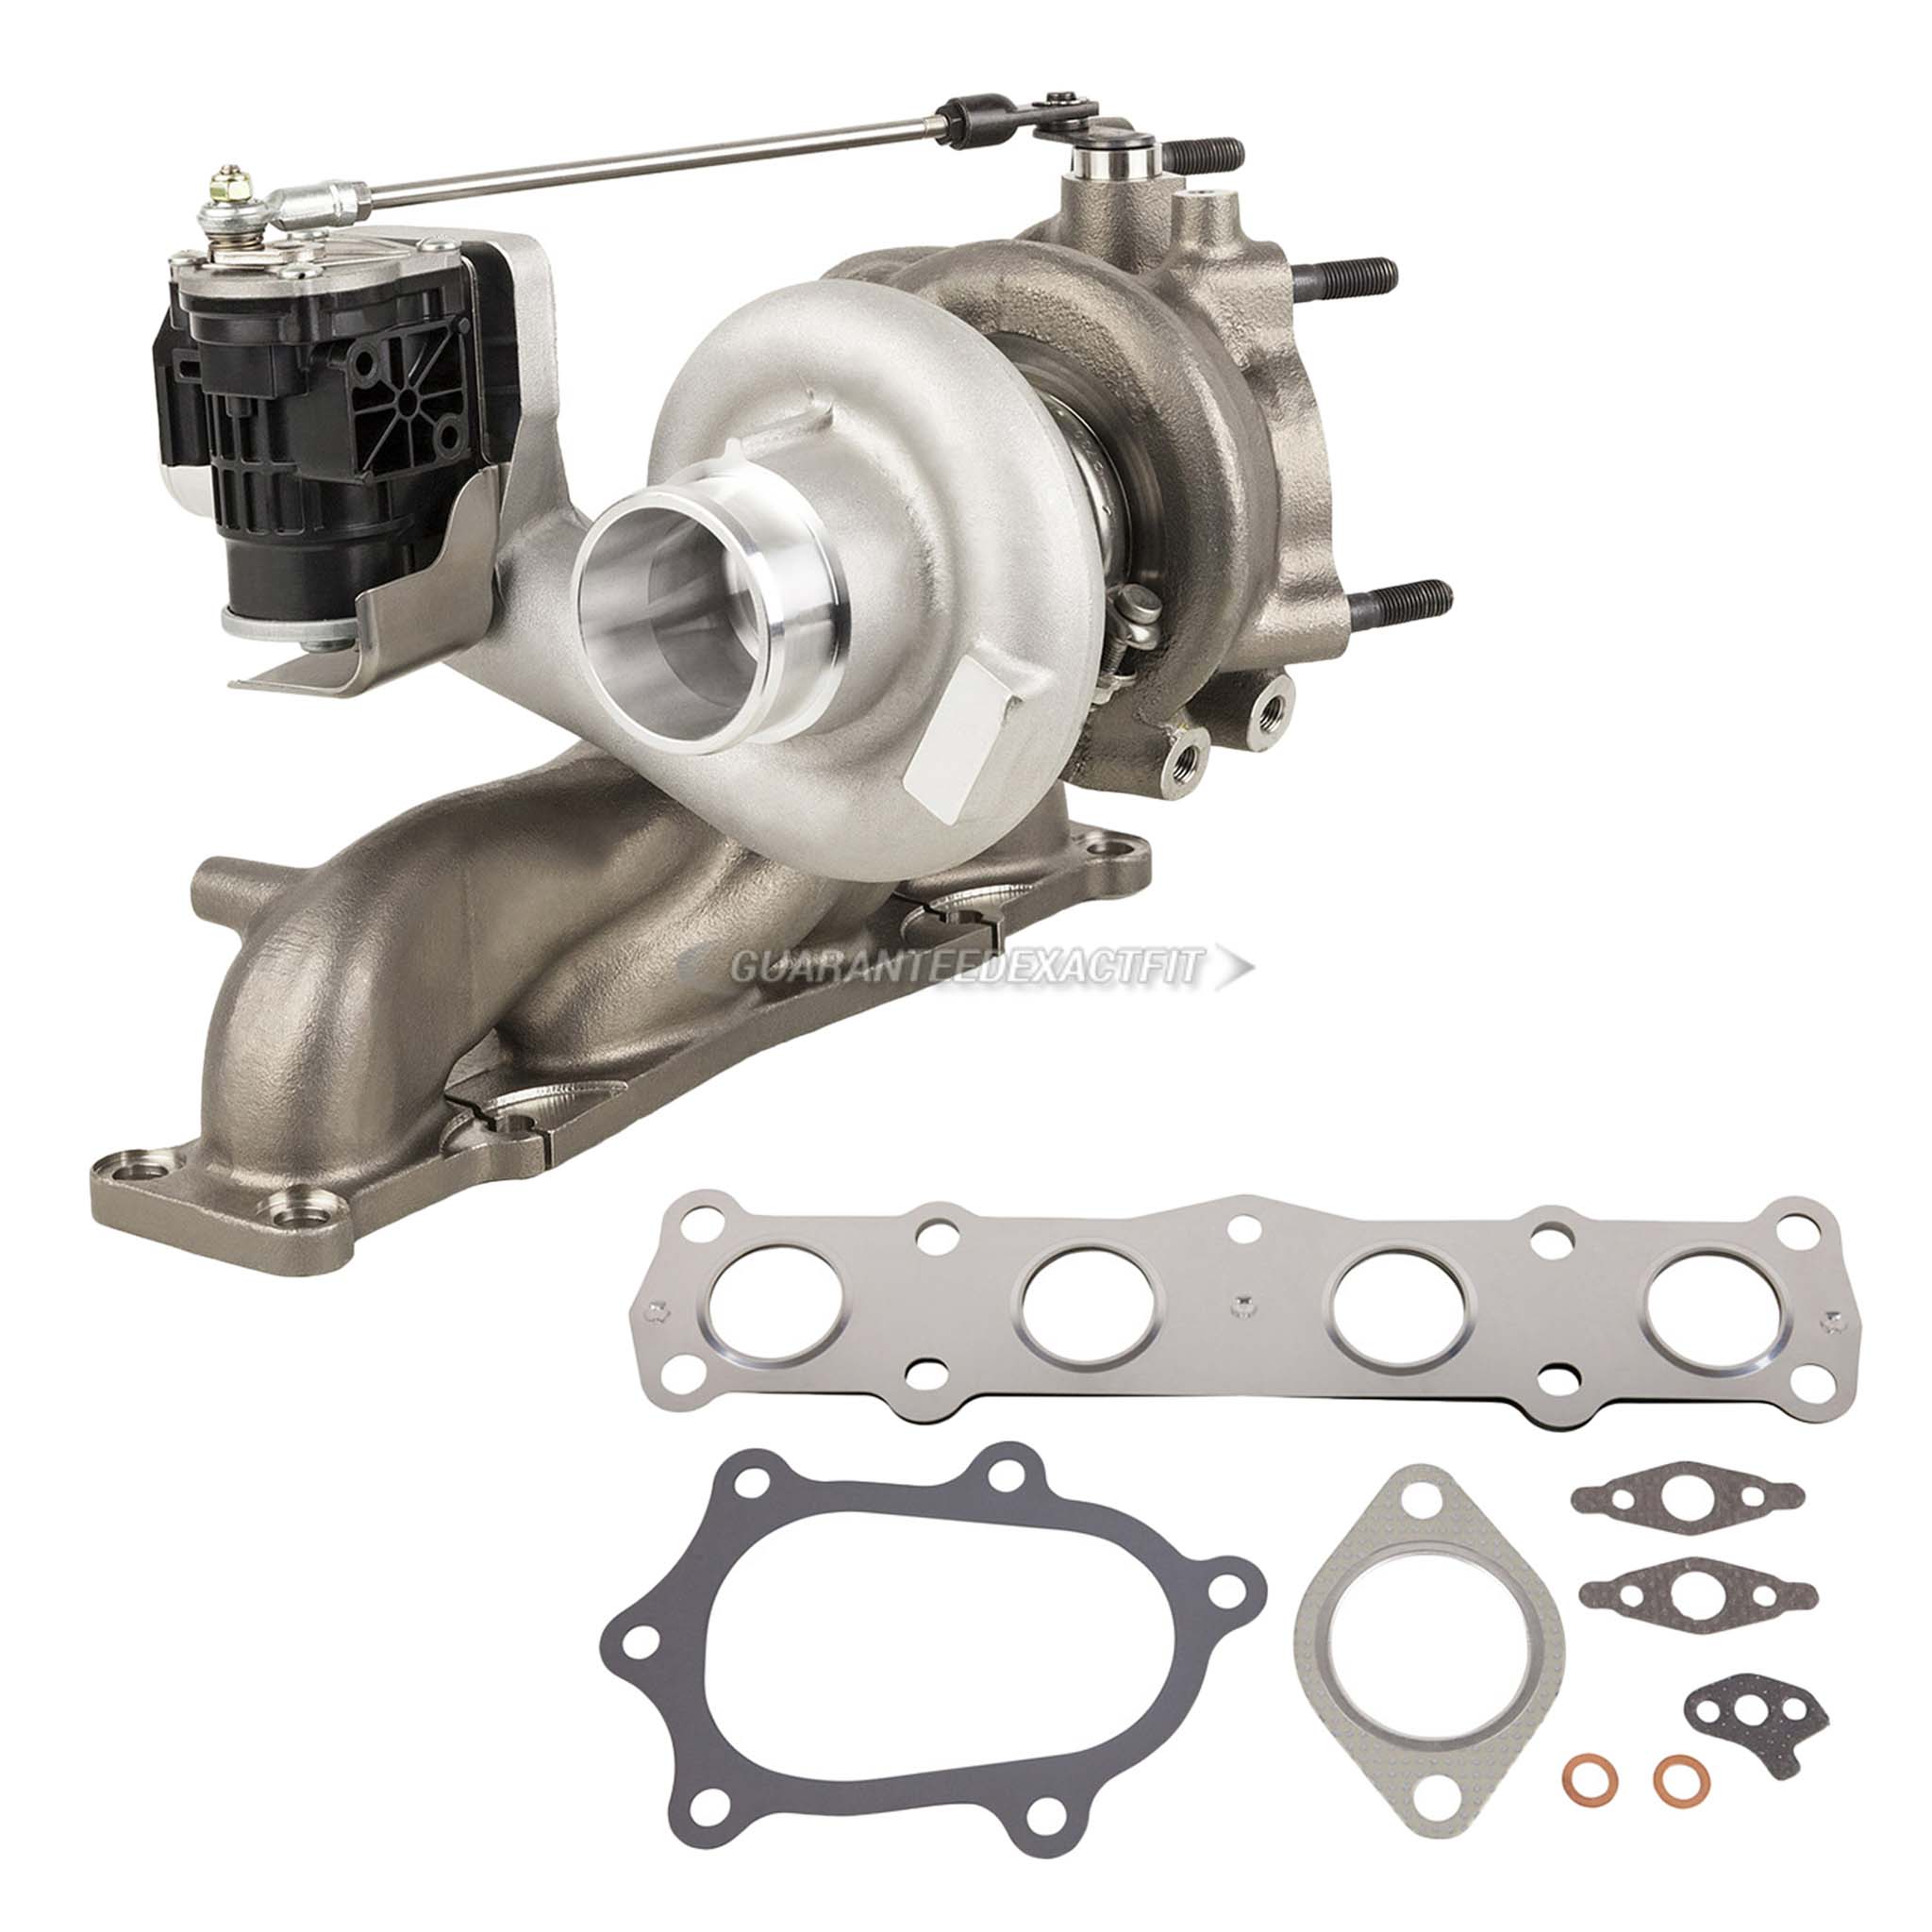 2015 Hyundai Santa Fe Sport turbocharger and installation accessory kit 